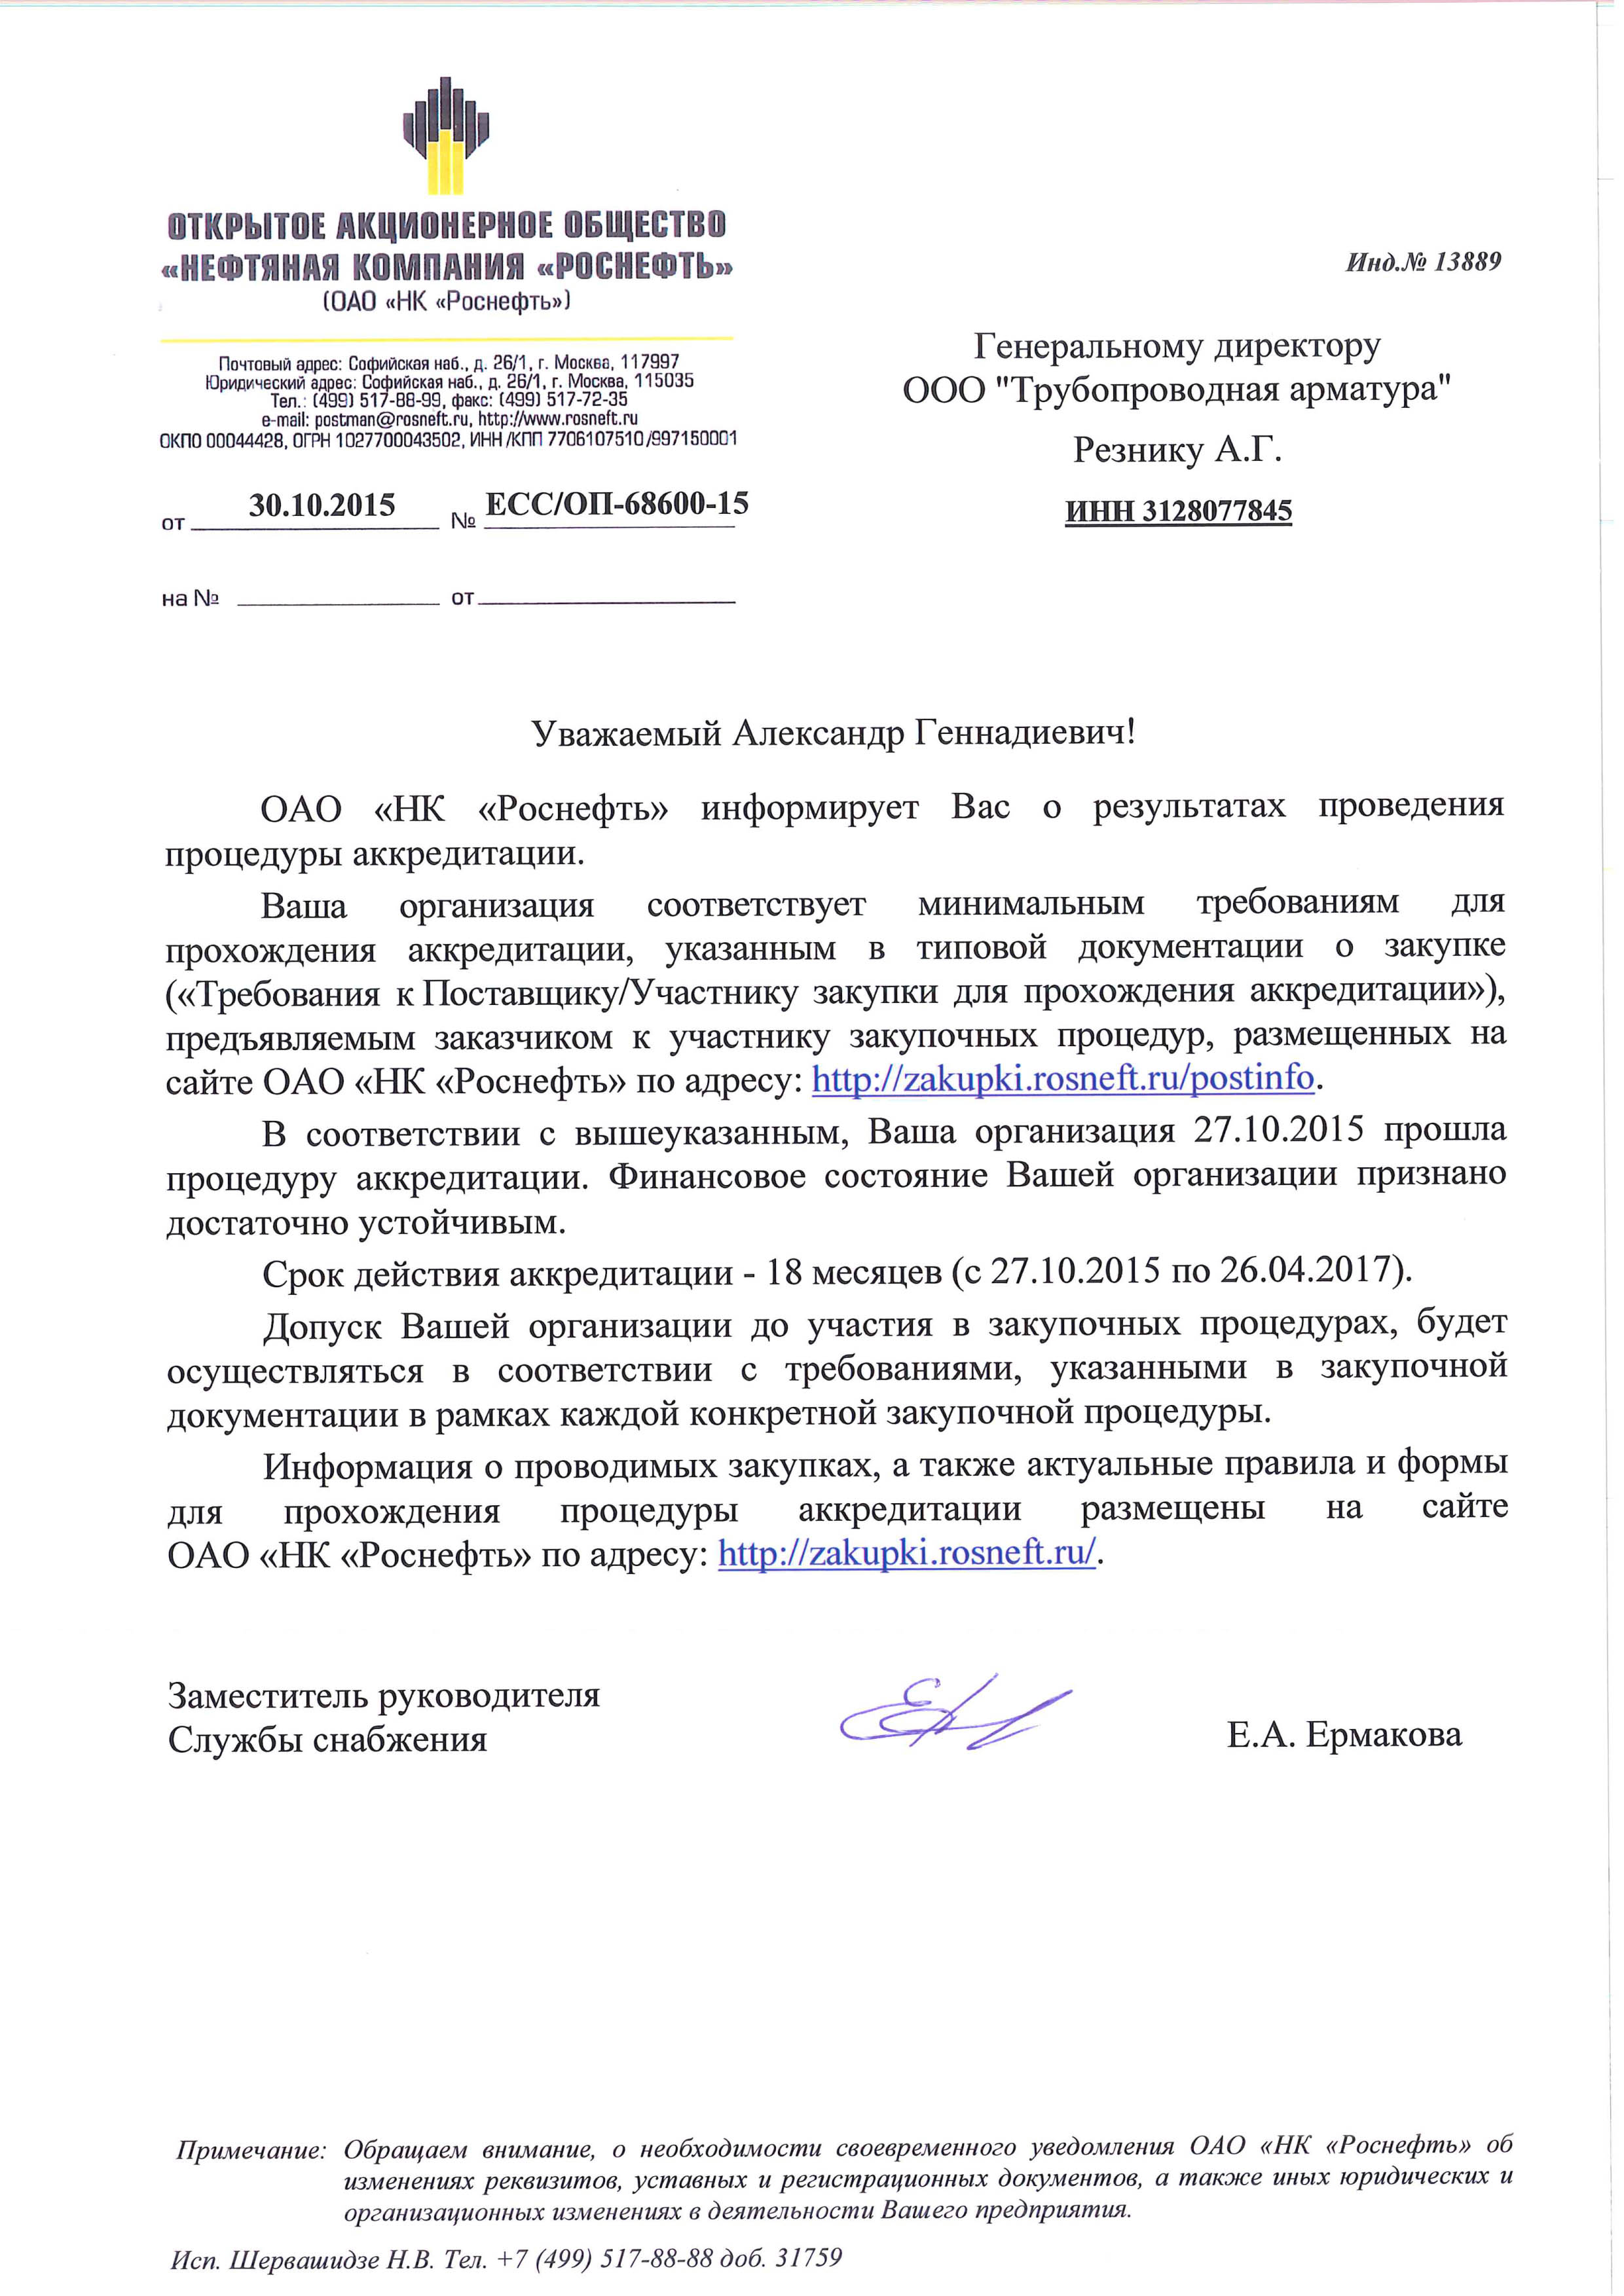 Аккредитация в ОАО "НК "Роснефть" 2015г